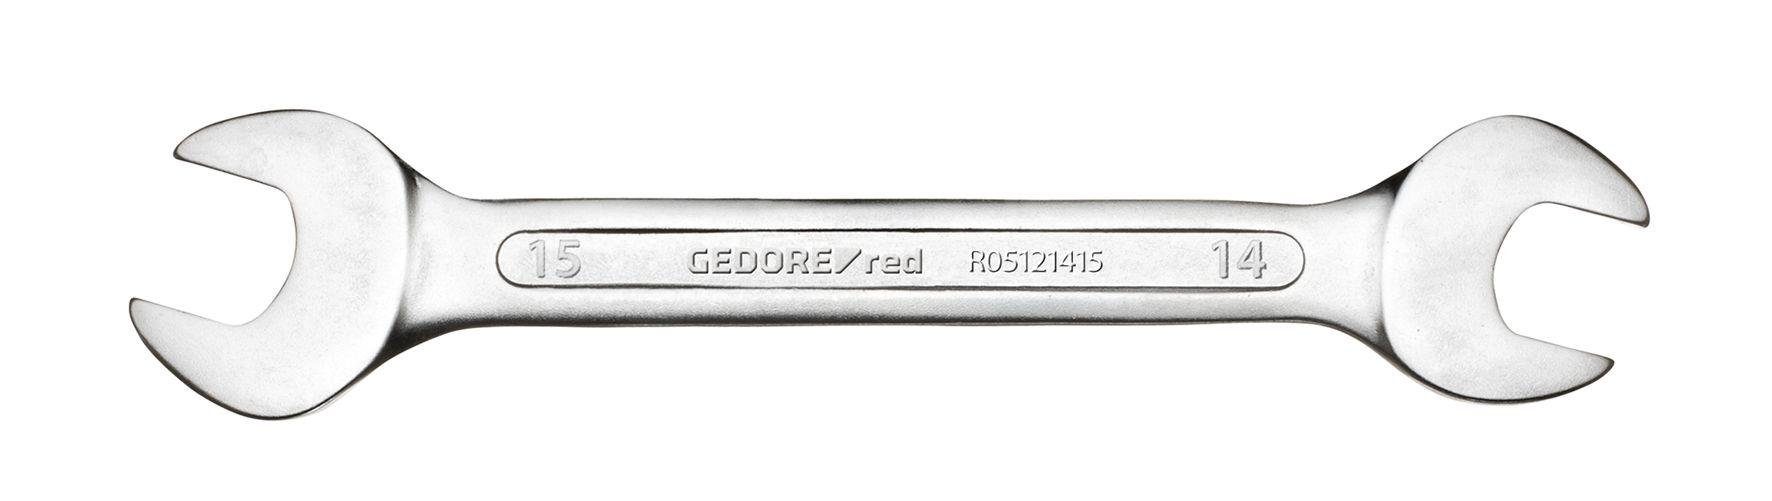 Gedore Red Maulschlüssel R05121415 Doppelmaulschlüssel SW14x15 mm 150 mm